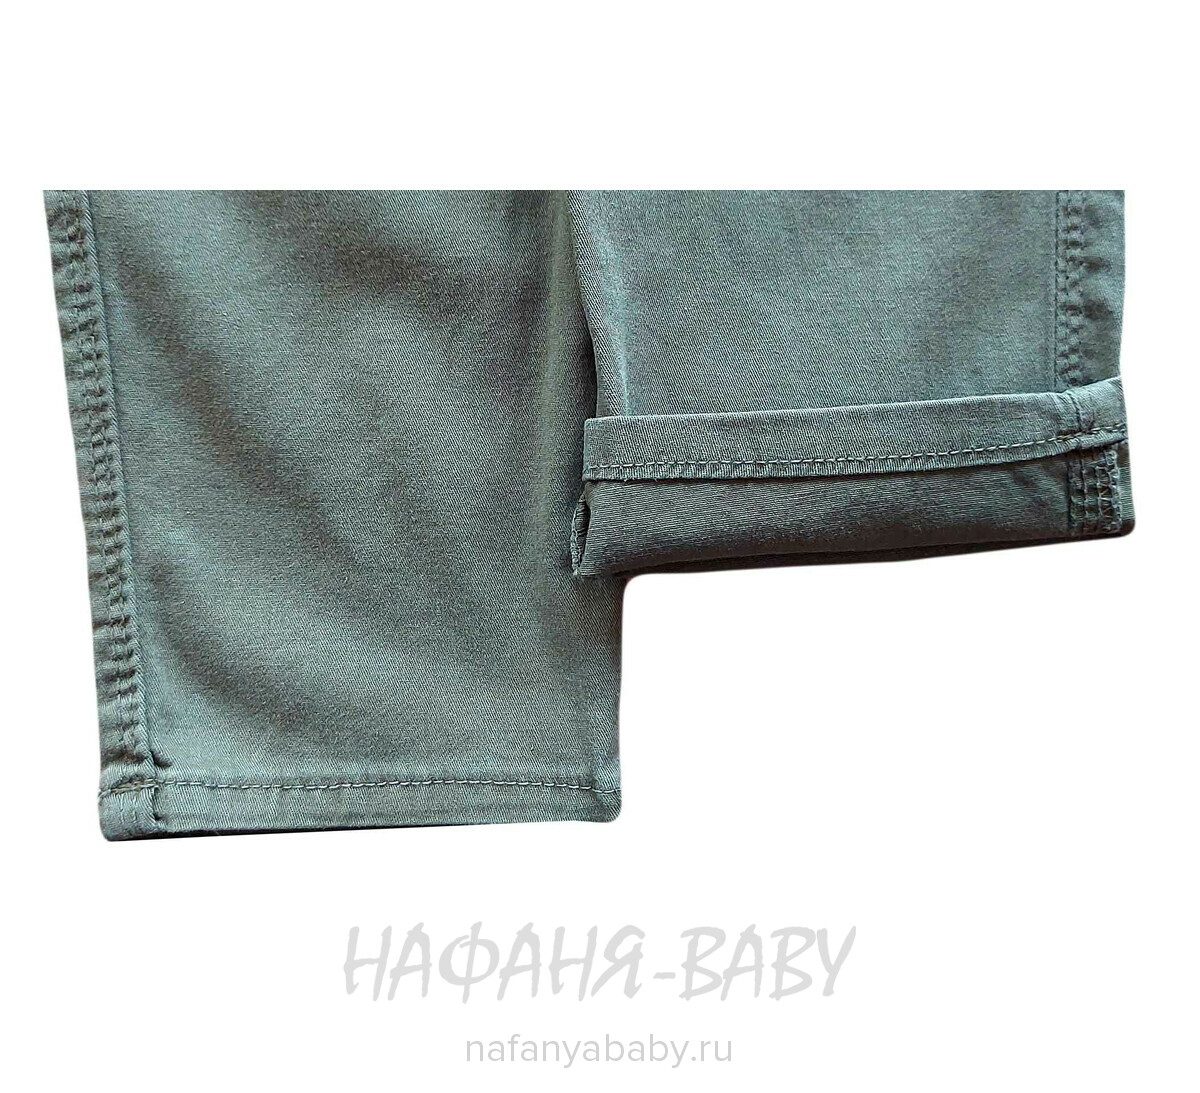 Подростковые летние брюки YAVRUCAK арт: 5256, 8-12 лет, цвет темный защитный хаки, оптом Турция